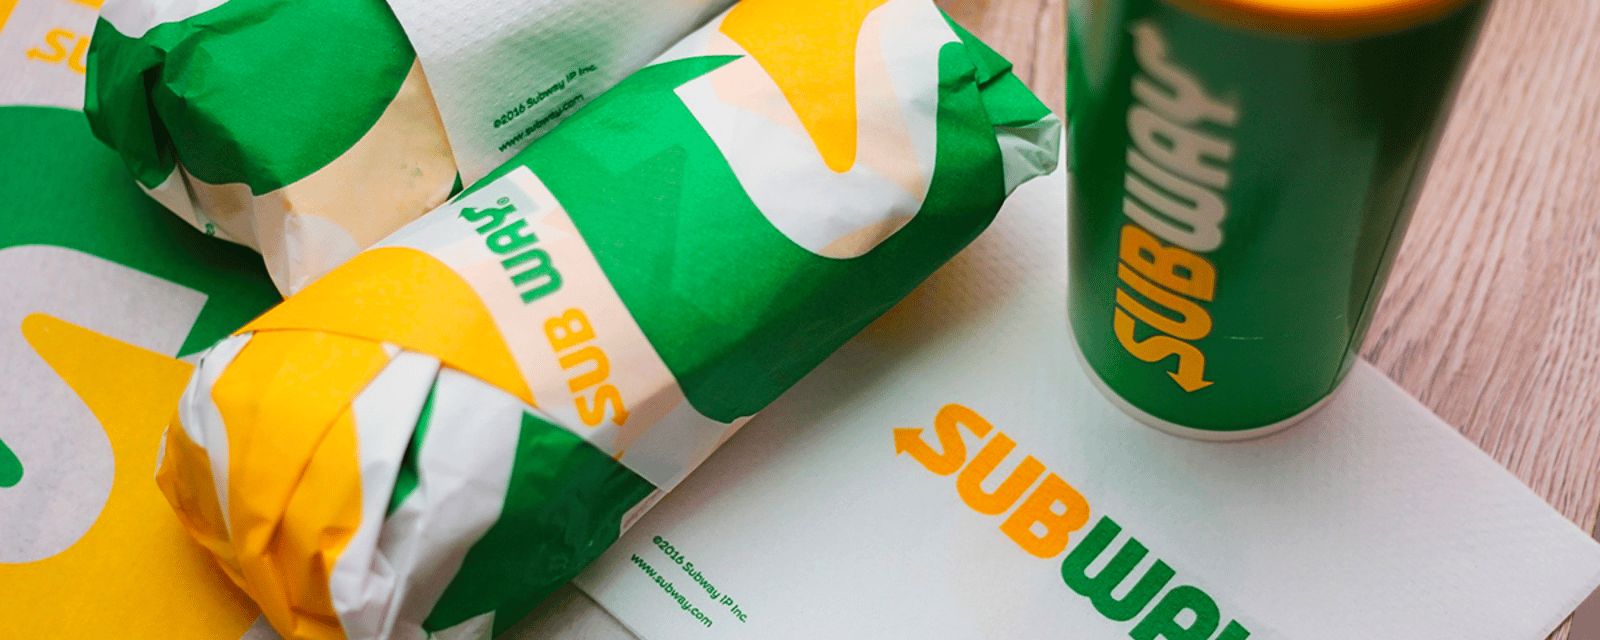 Subway lance un nouveau sandwich pour Pâques et ça fait beaucoup réagir les internautes